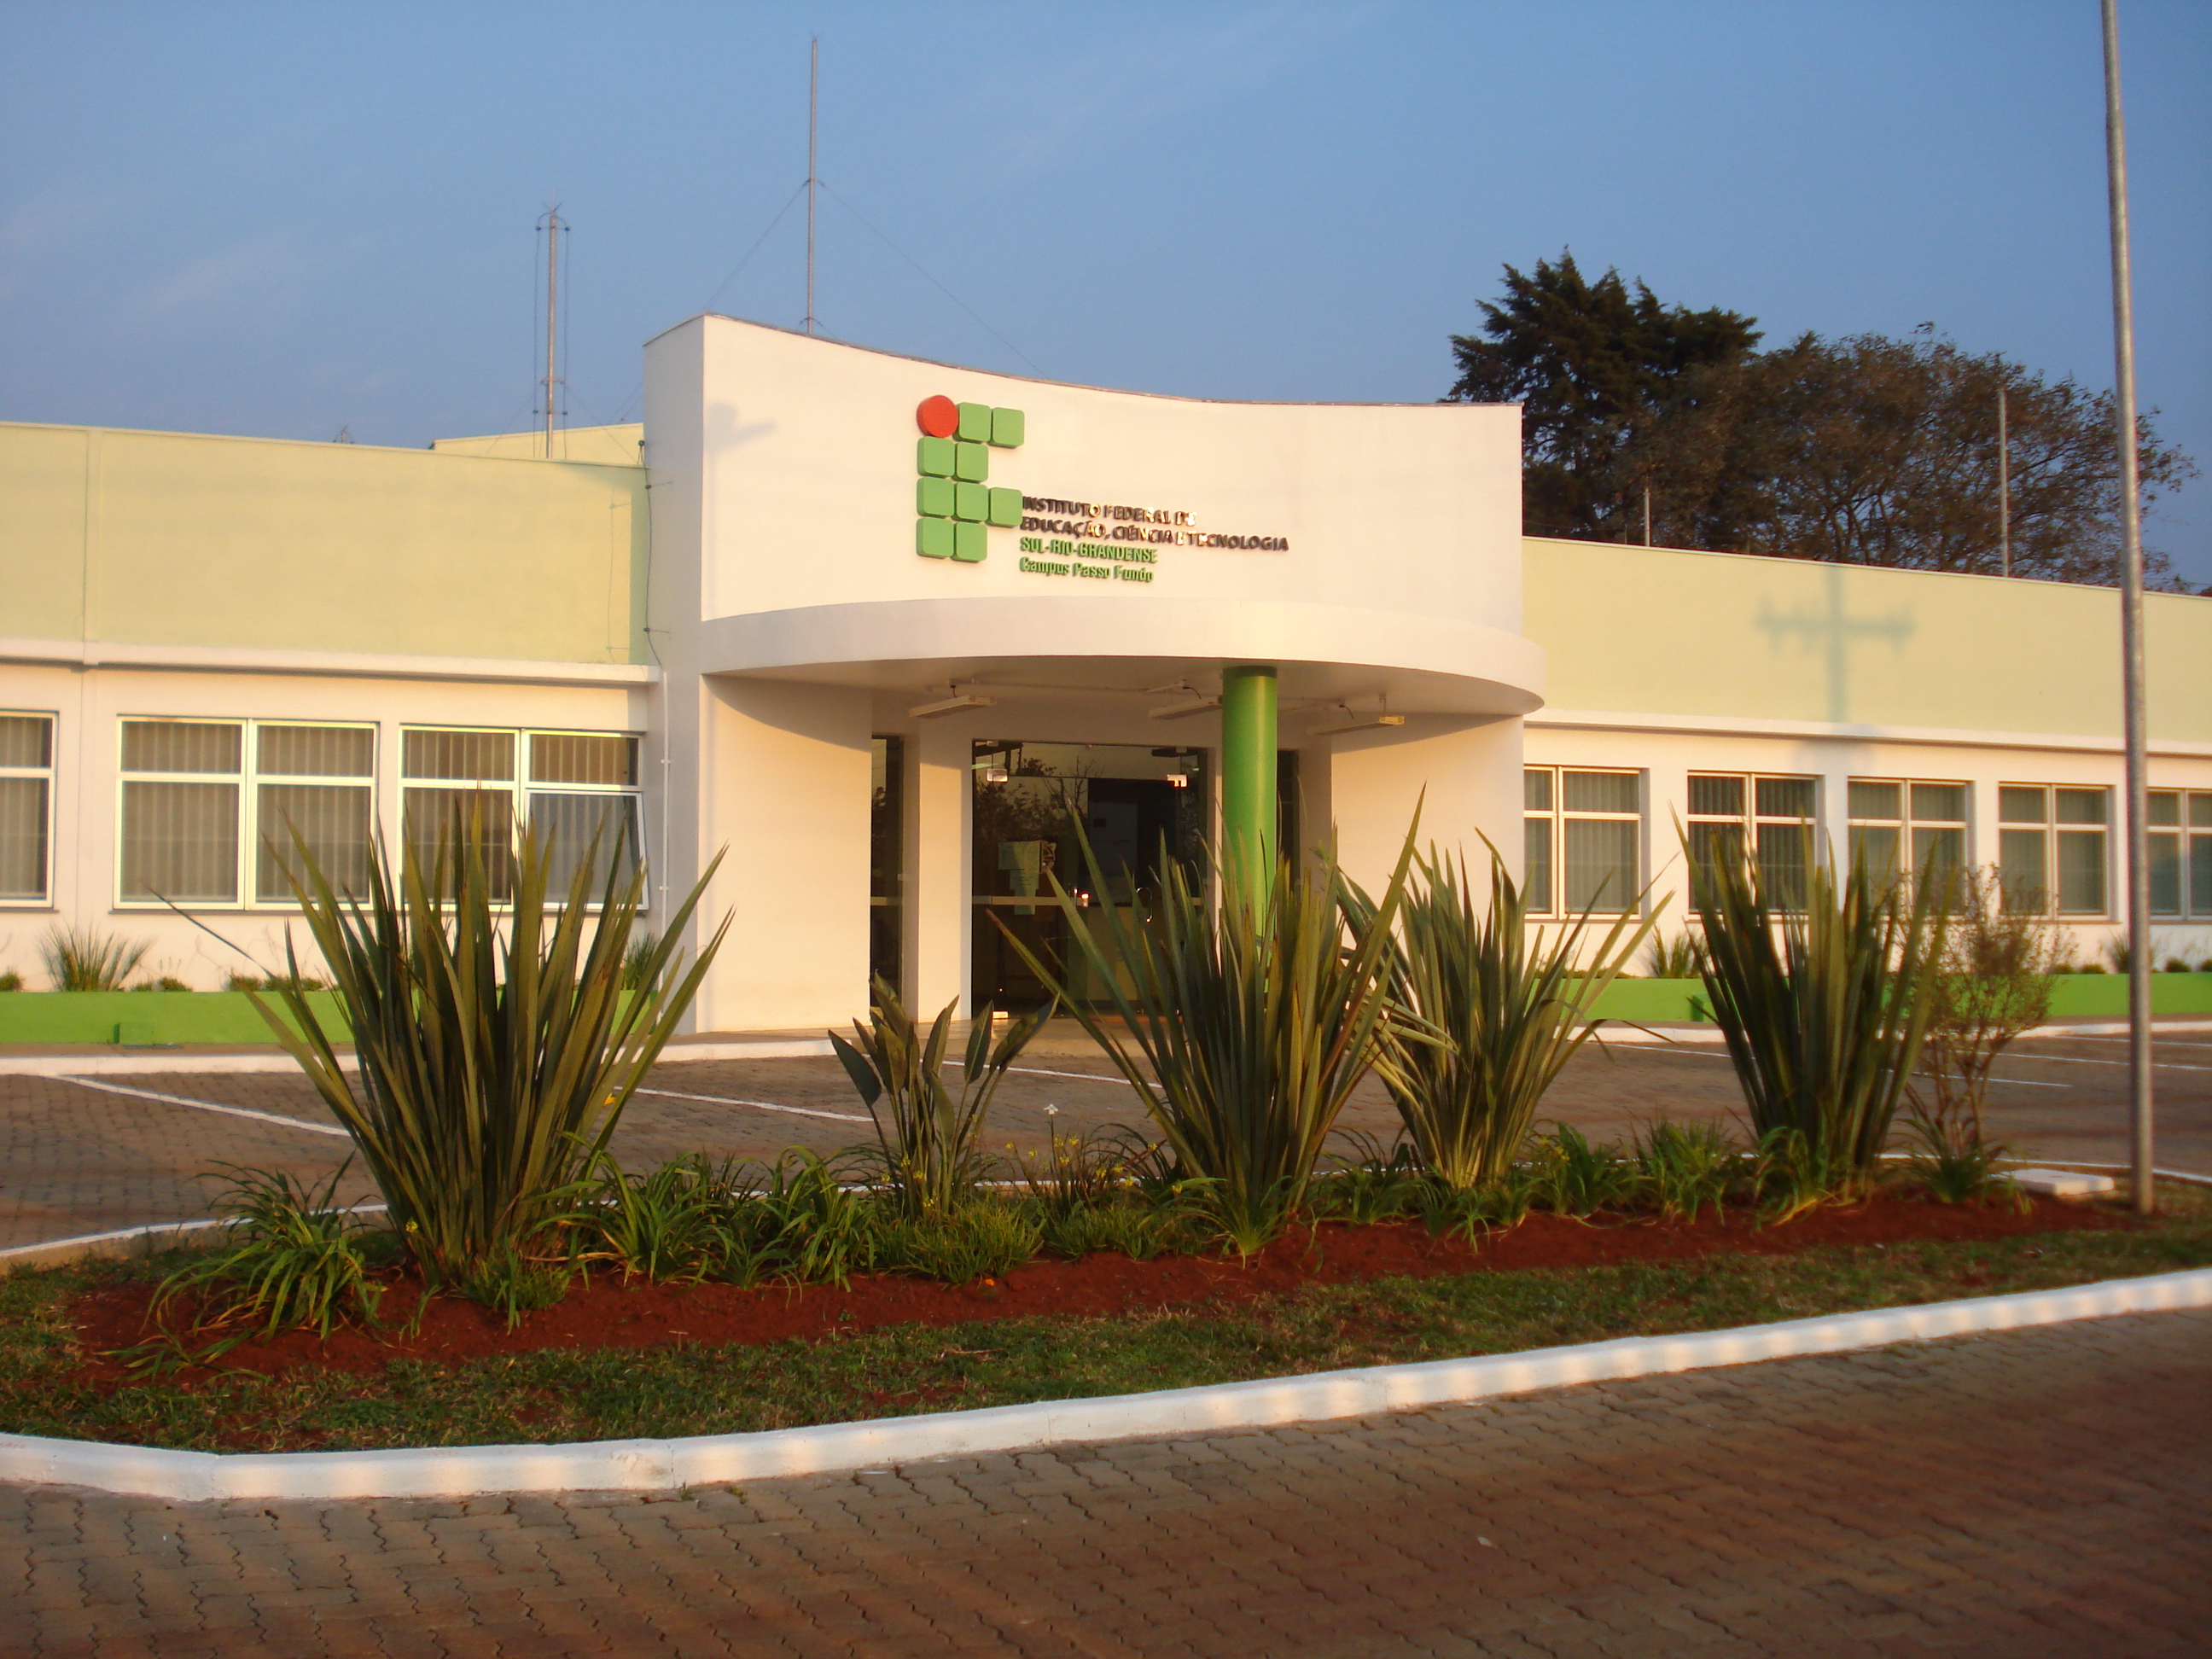 Instituto Federal Sul-rio-grandense